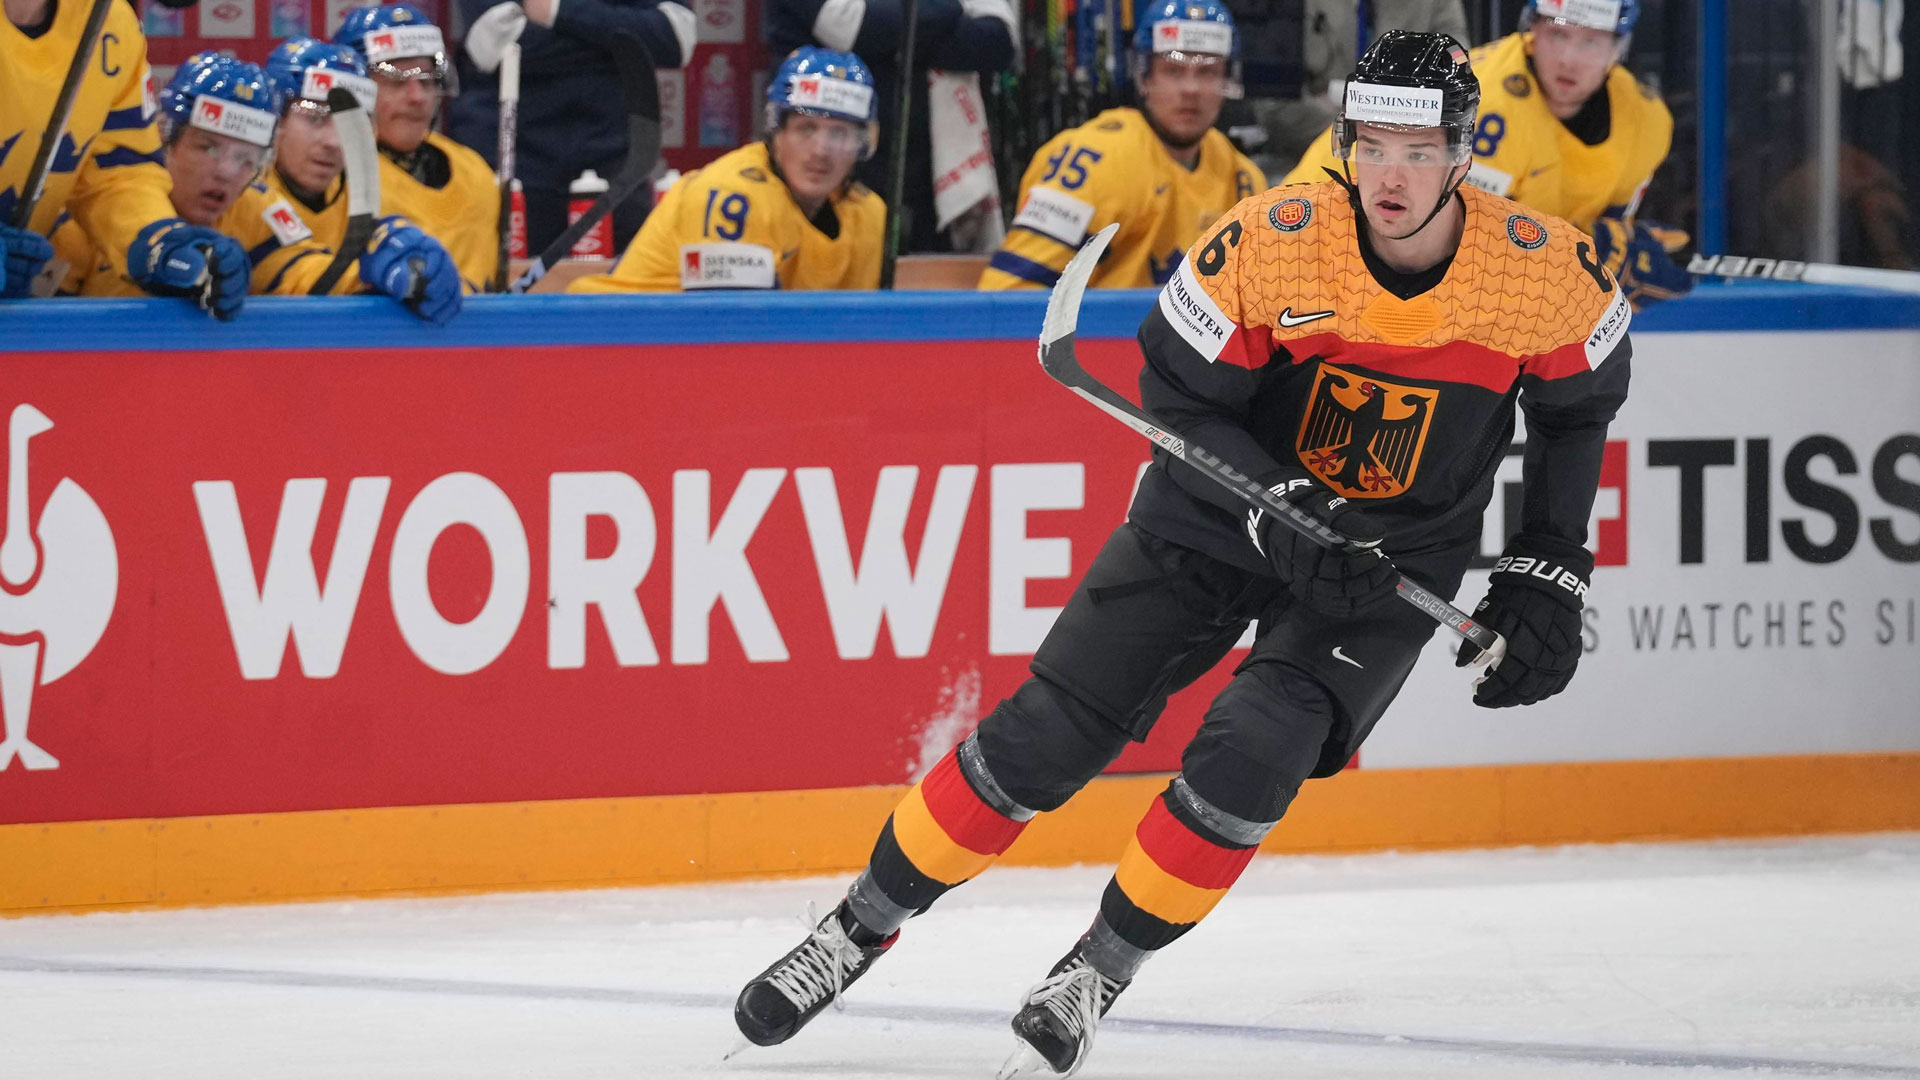 Eishockey-Nationalspieler Kai Wissmann im WM-Spiel gegen Schweden. (Bild: IMAGO / Newspix24)